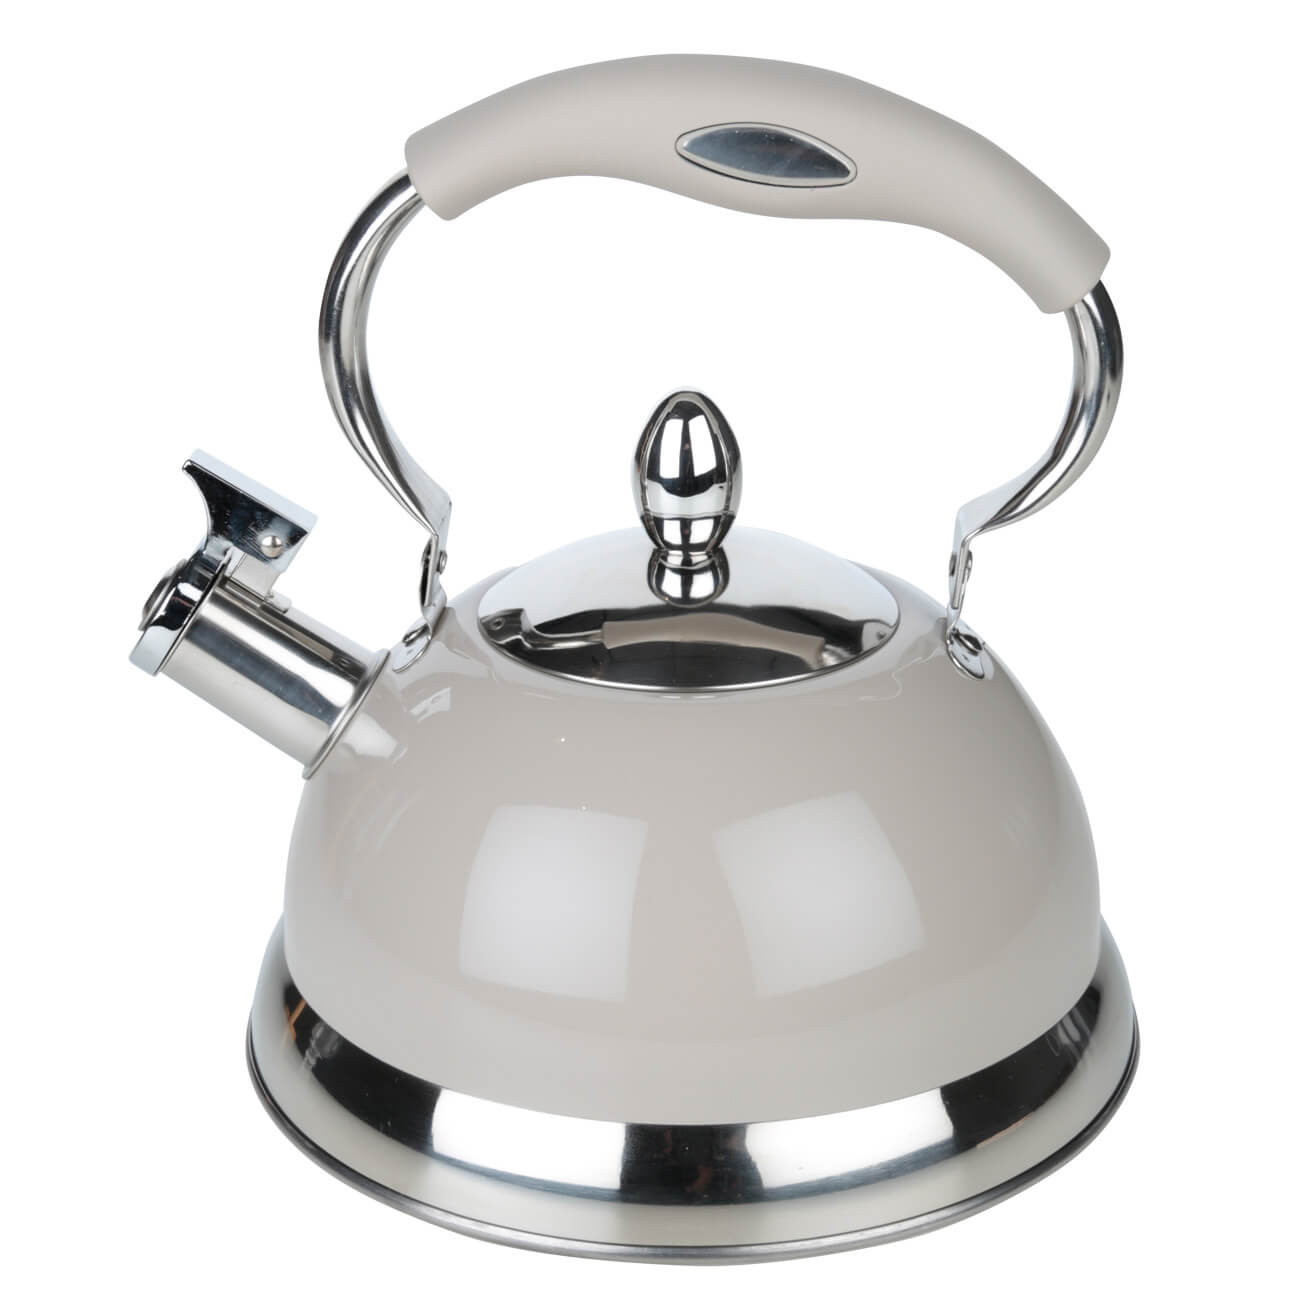 Чайник, 2,7 л, cо свистком, сталь, серый, Whistle чайник нержавеющая сталь 2 5 л со свистком зеркальный коричневая ручка hoffmann индукция нм 55208